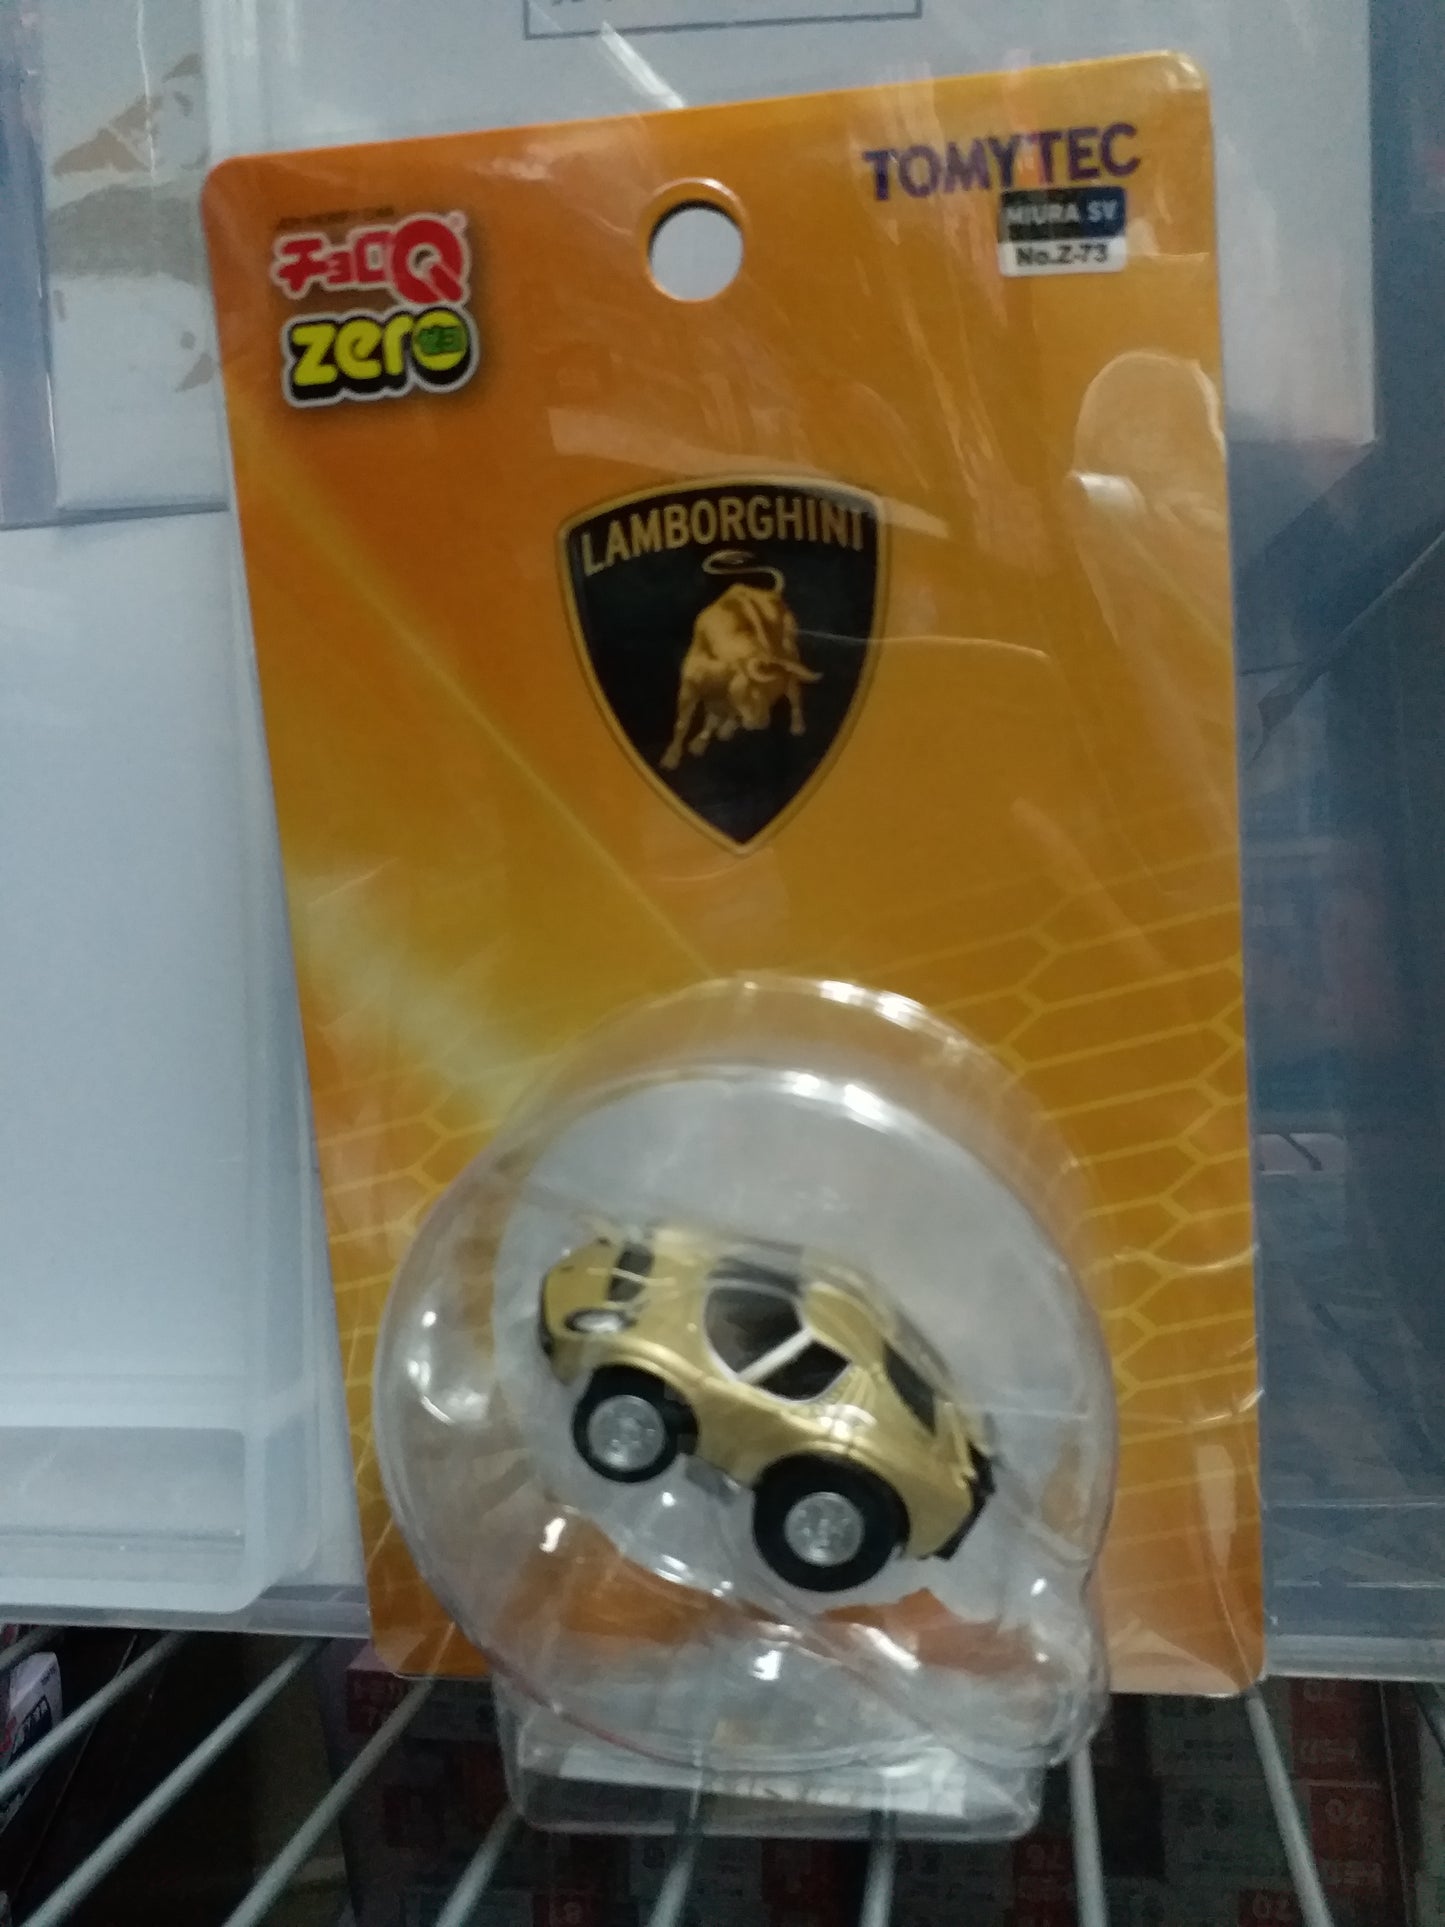 Tomytec ChoroQ Zero Z-73c Lamborghini Miura SV (Gold)